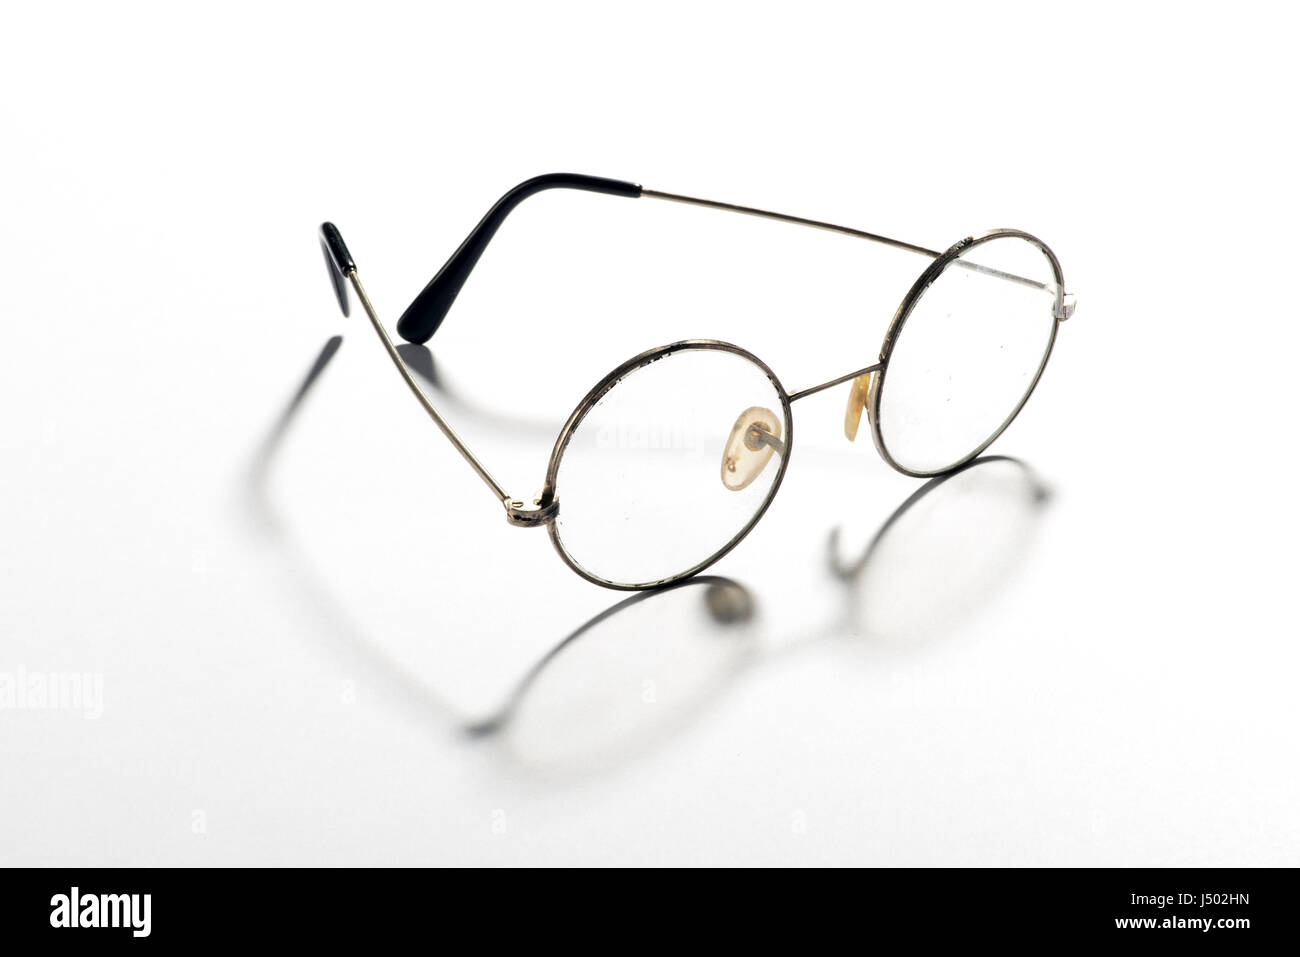 Par de gafas vintage redonda clásica, gafas o lentes con un alambre fino fotograma mostrado abierto arrojar una sombra sobre un blanco backgrou reflectante Foto de stock